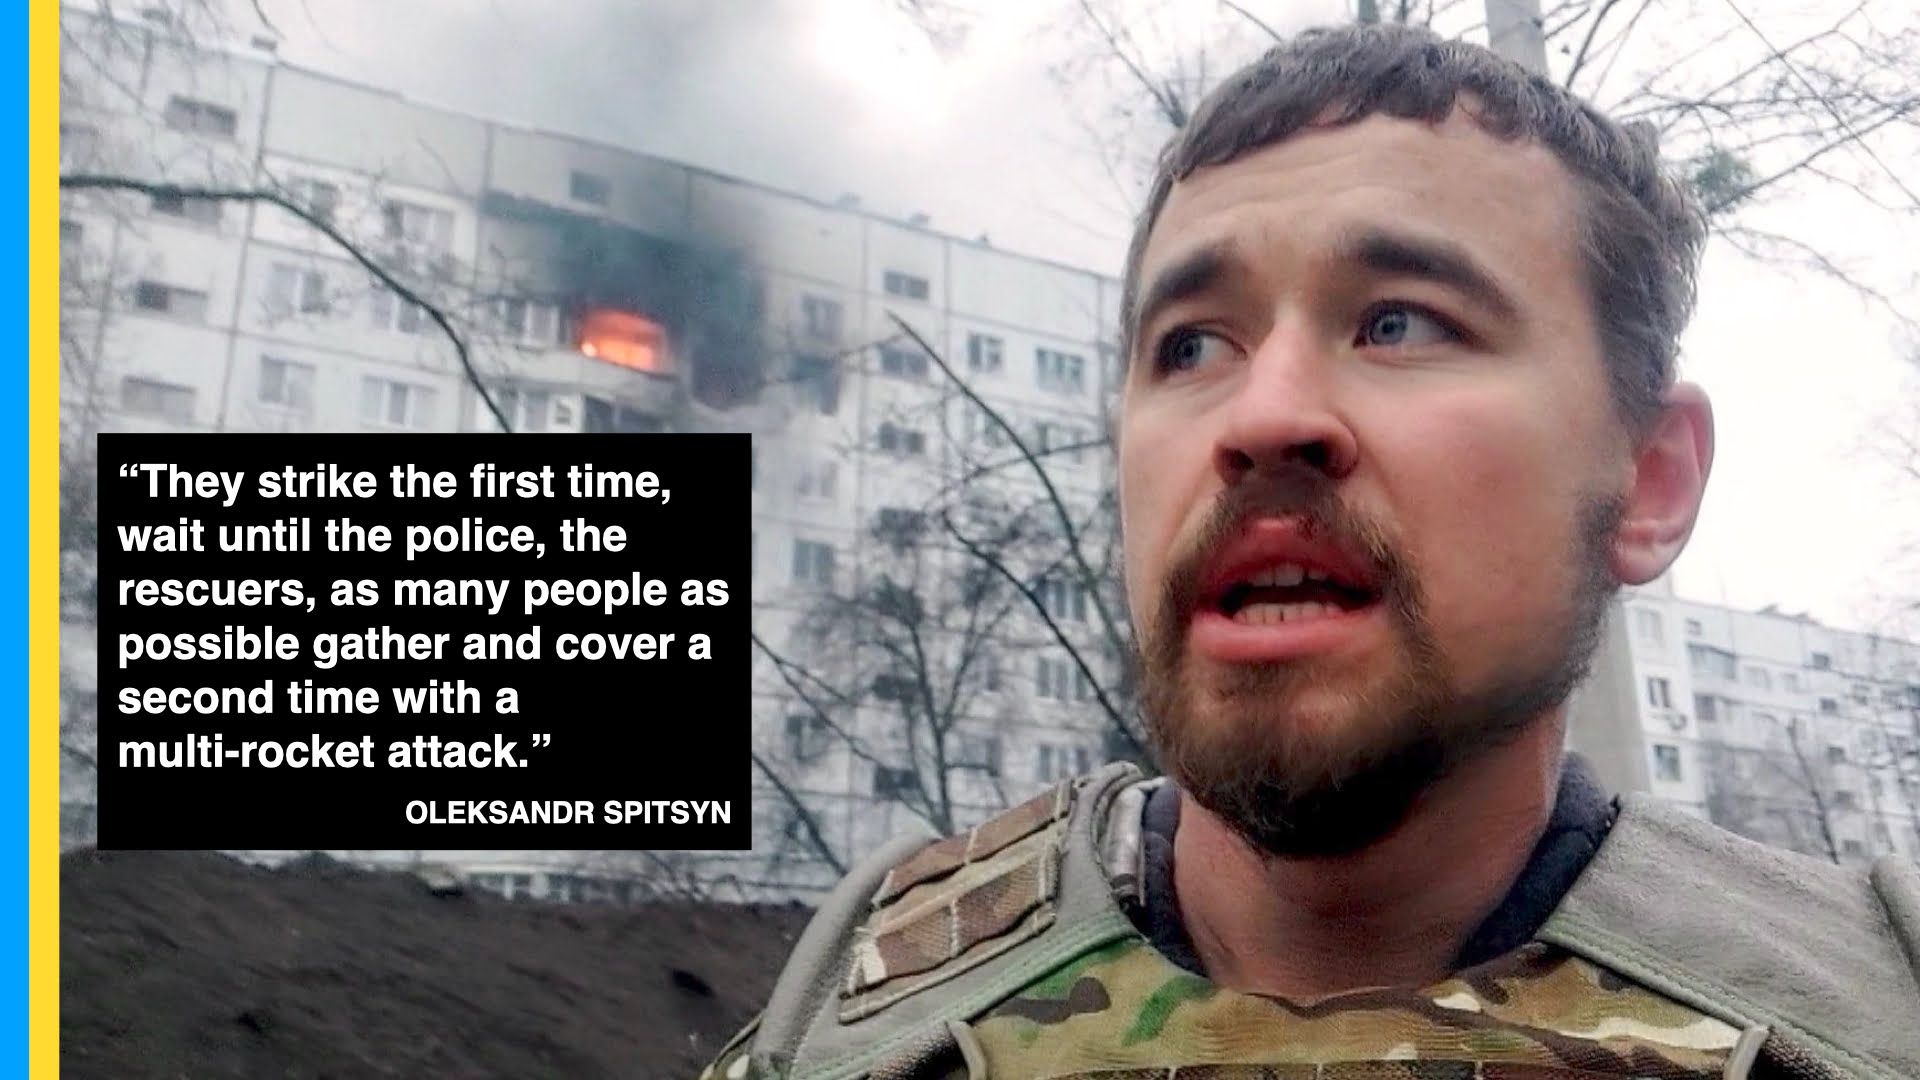 Olexander spitsyn from documentary Ukraine, Kharkiv